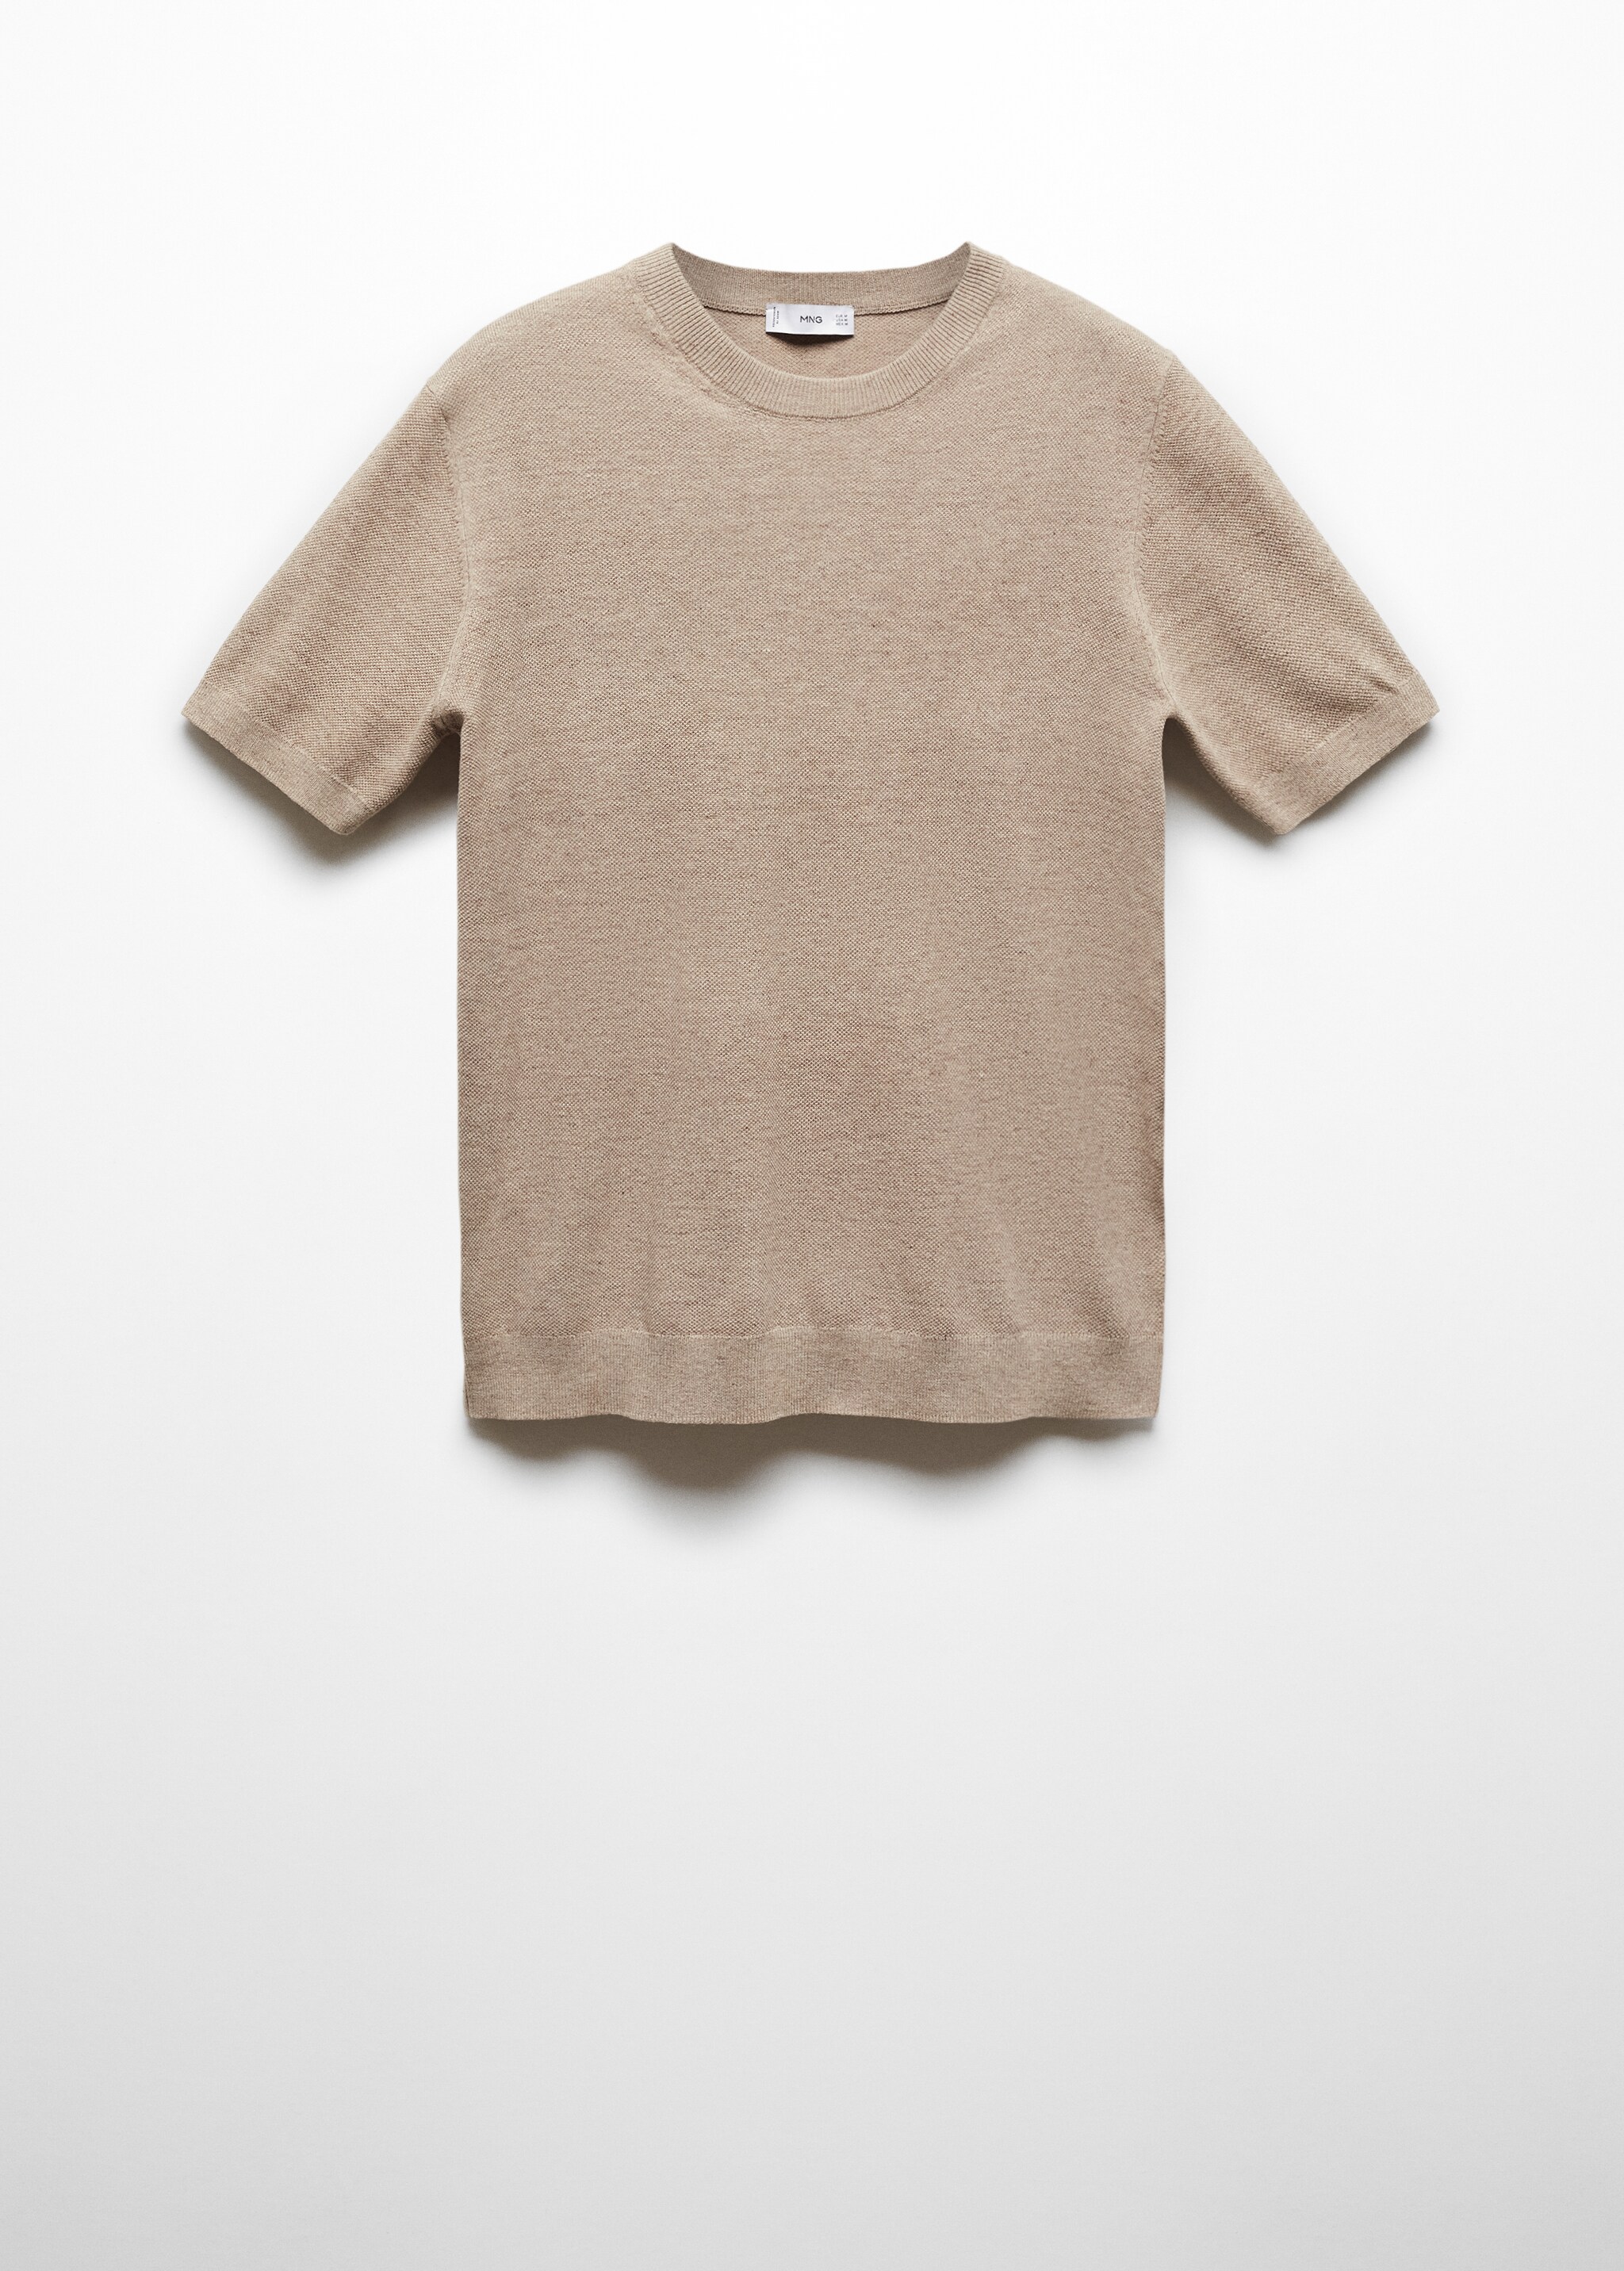 Camiseta punto algodón estructura - Artículo sin modelo